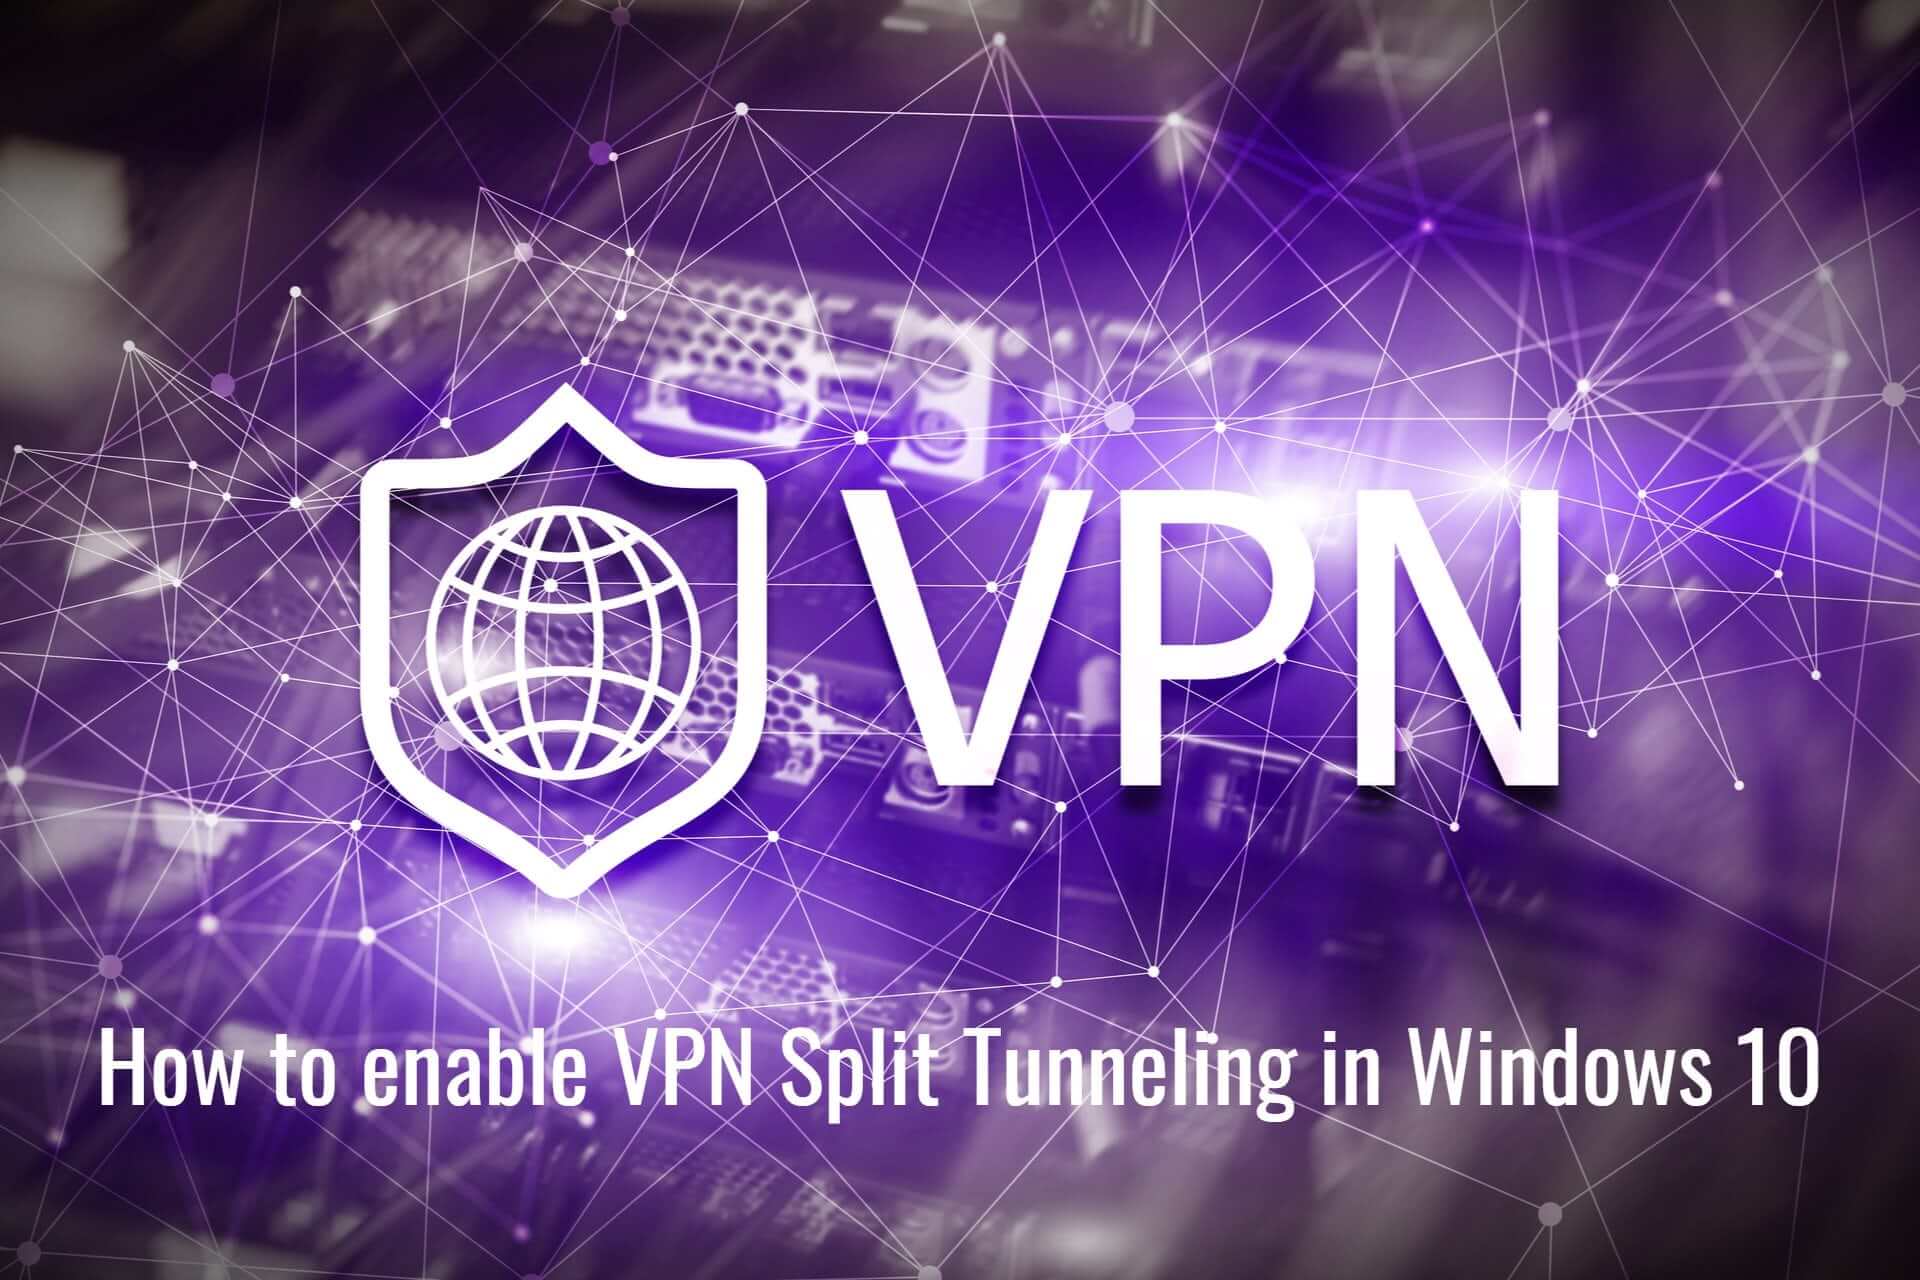 enable VPN split tunneling in Windows 10